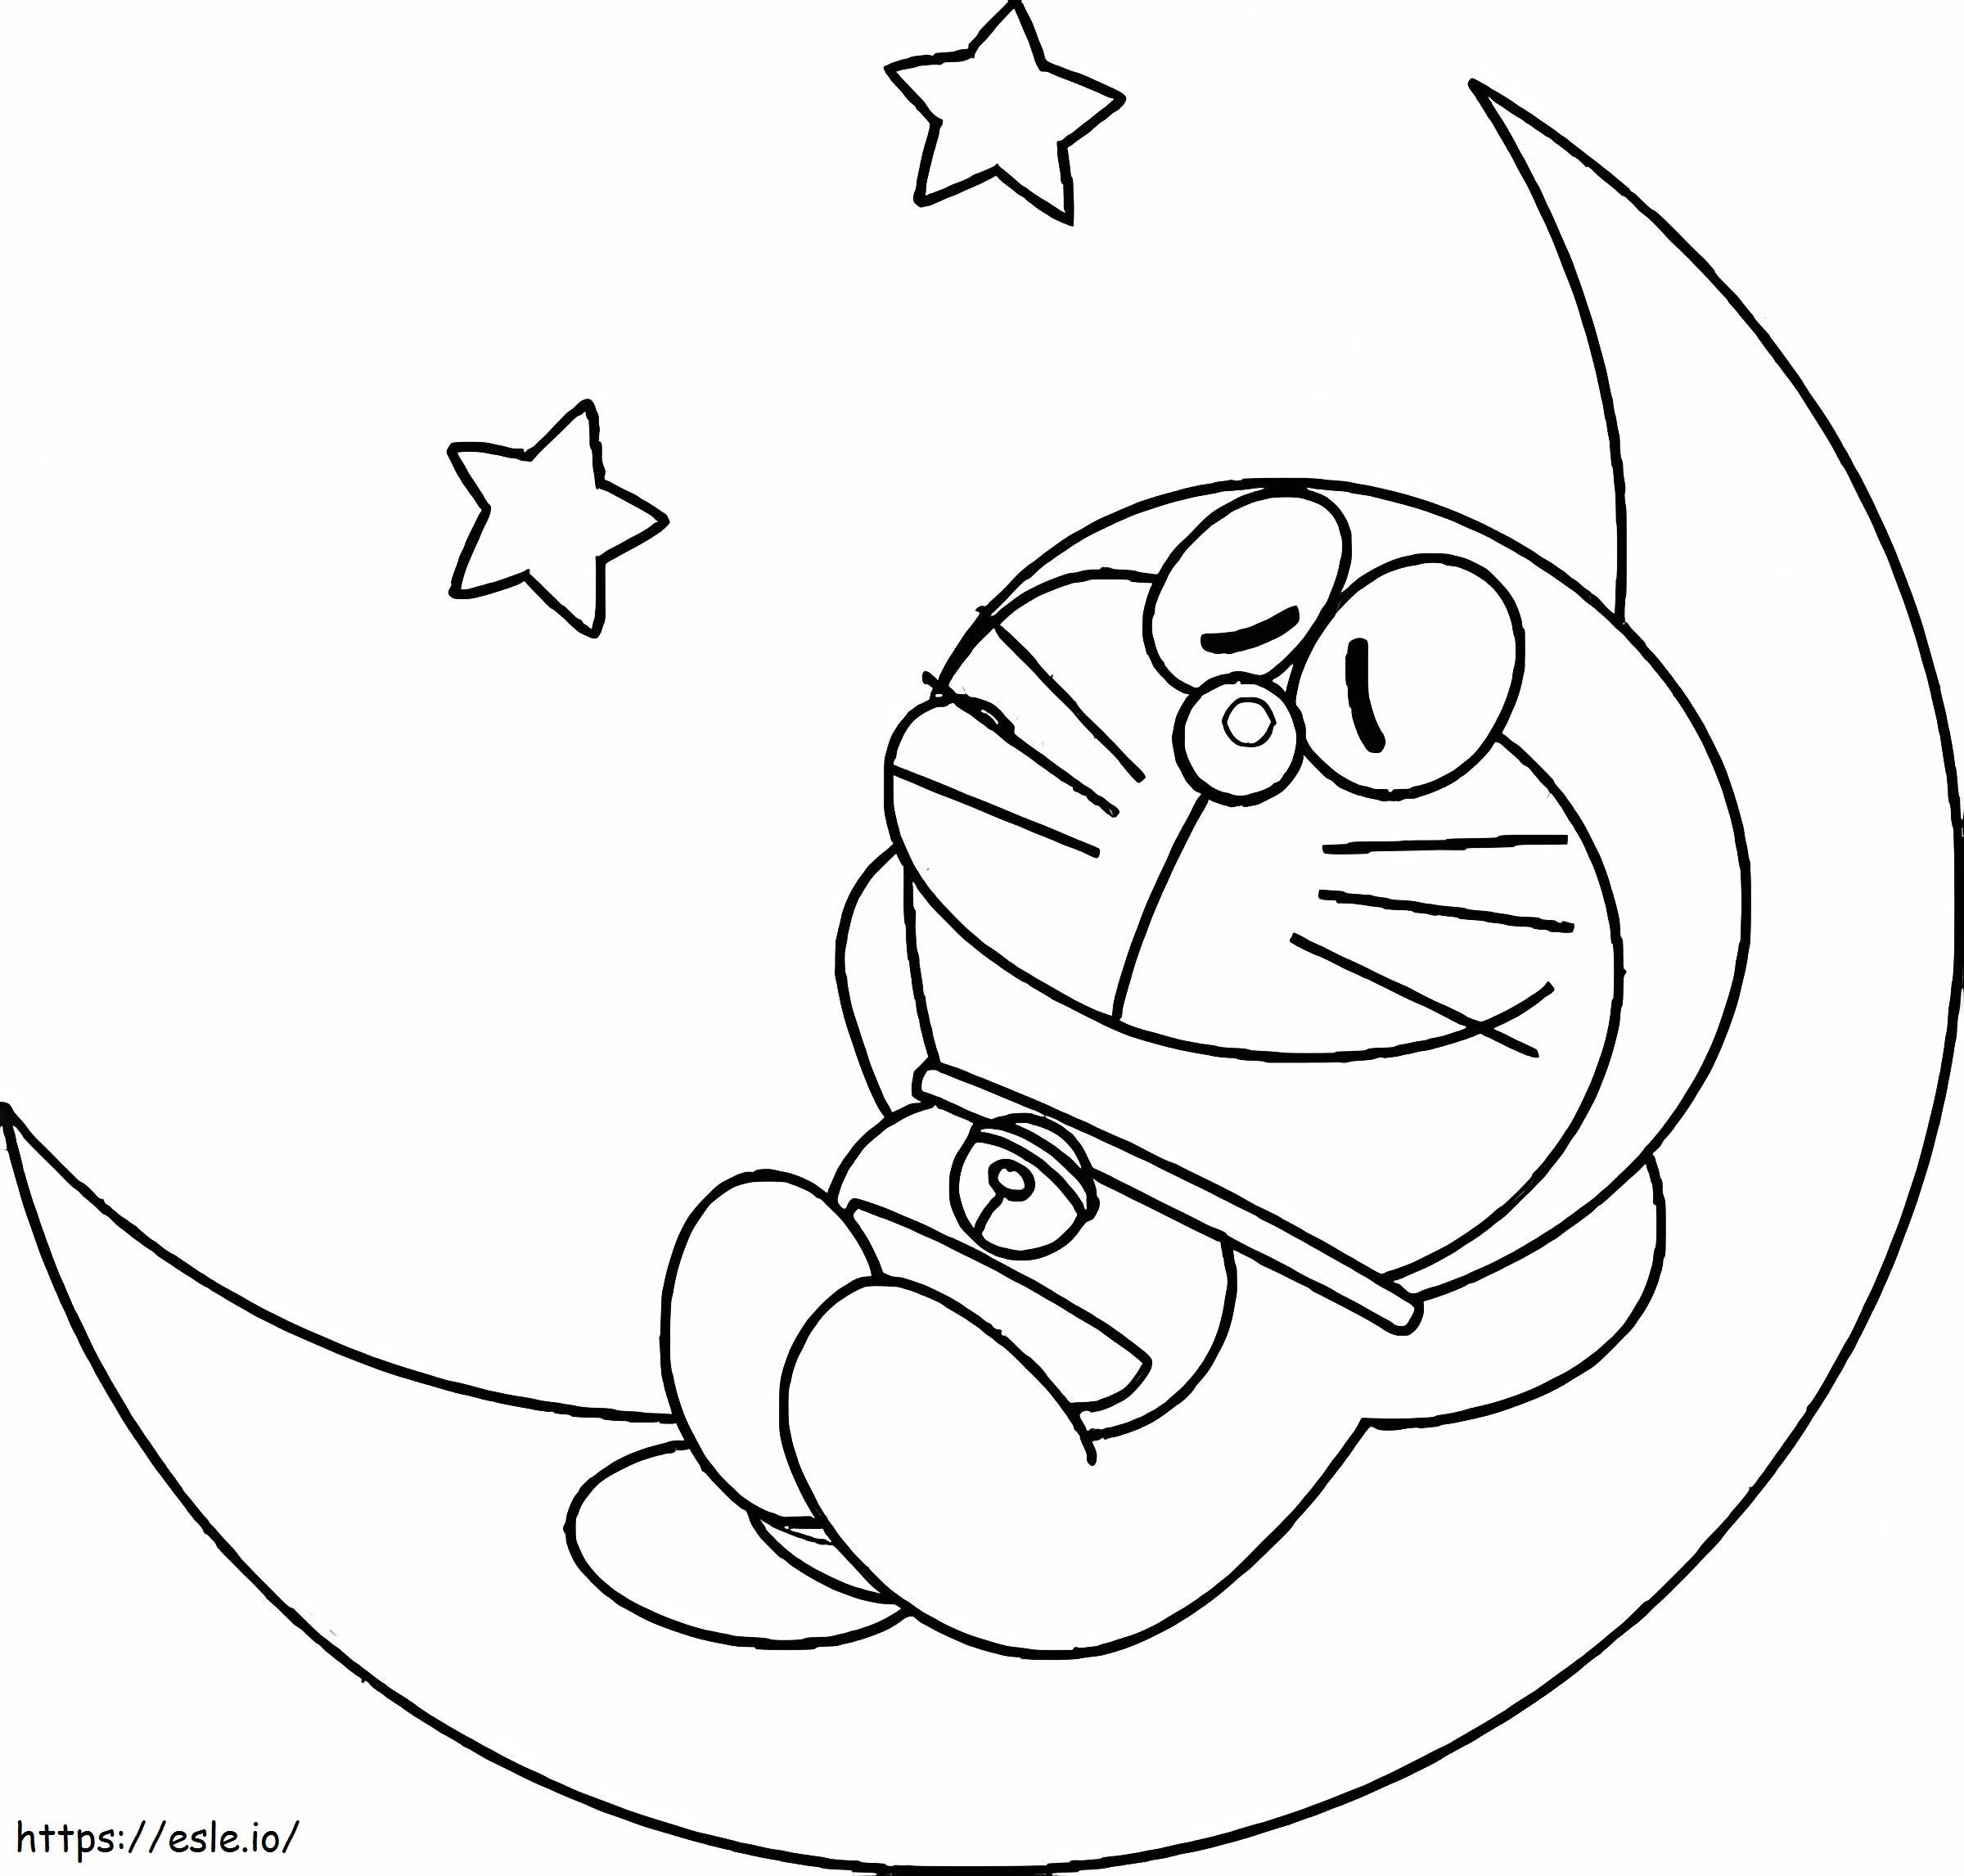  Doraemon Sleep On Moons Disegni da colorare a grandezza naturale Doraemon stampabile da colorare